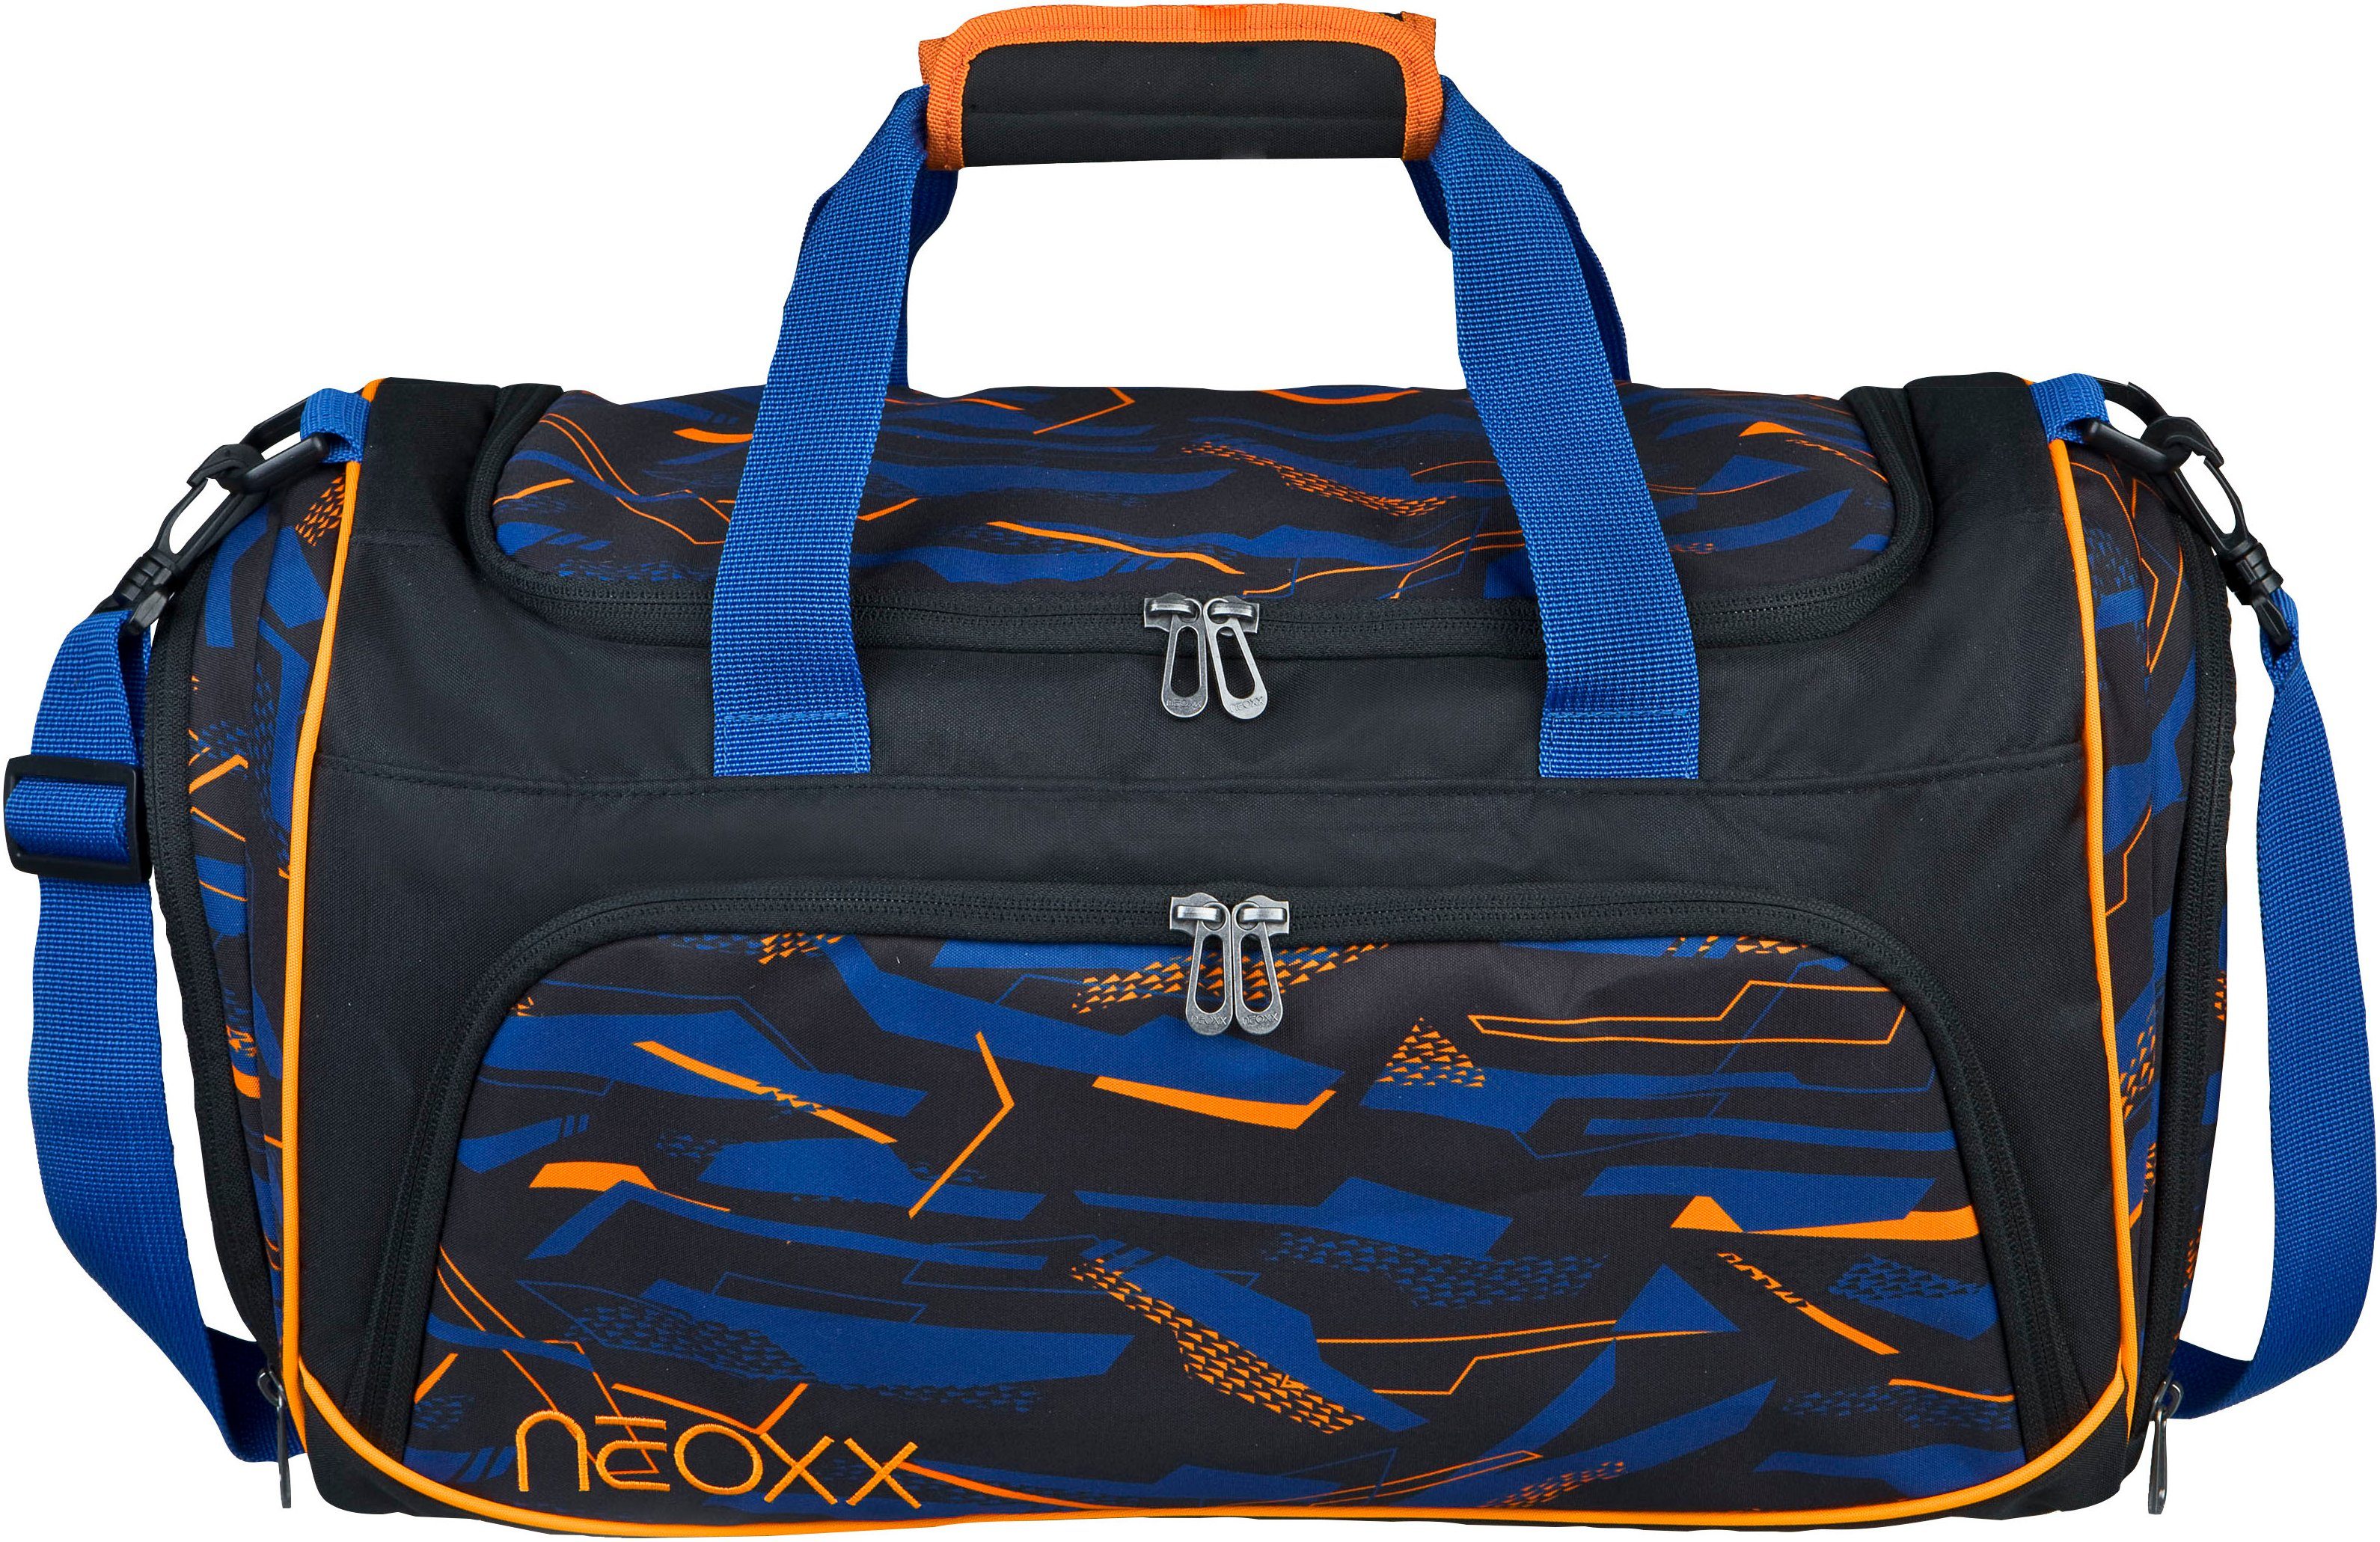 Neoxx Sporttas Move Streetlight gedeeltelijk van gerecycled materiaal